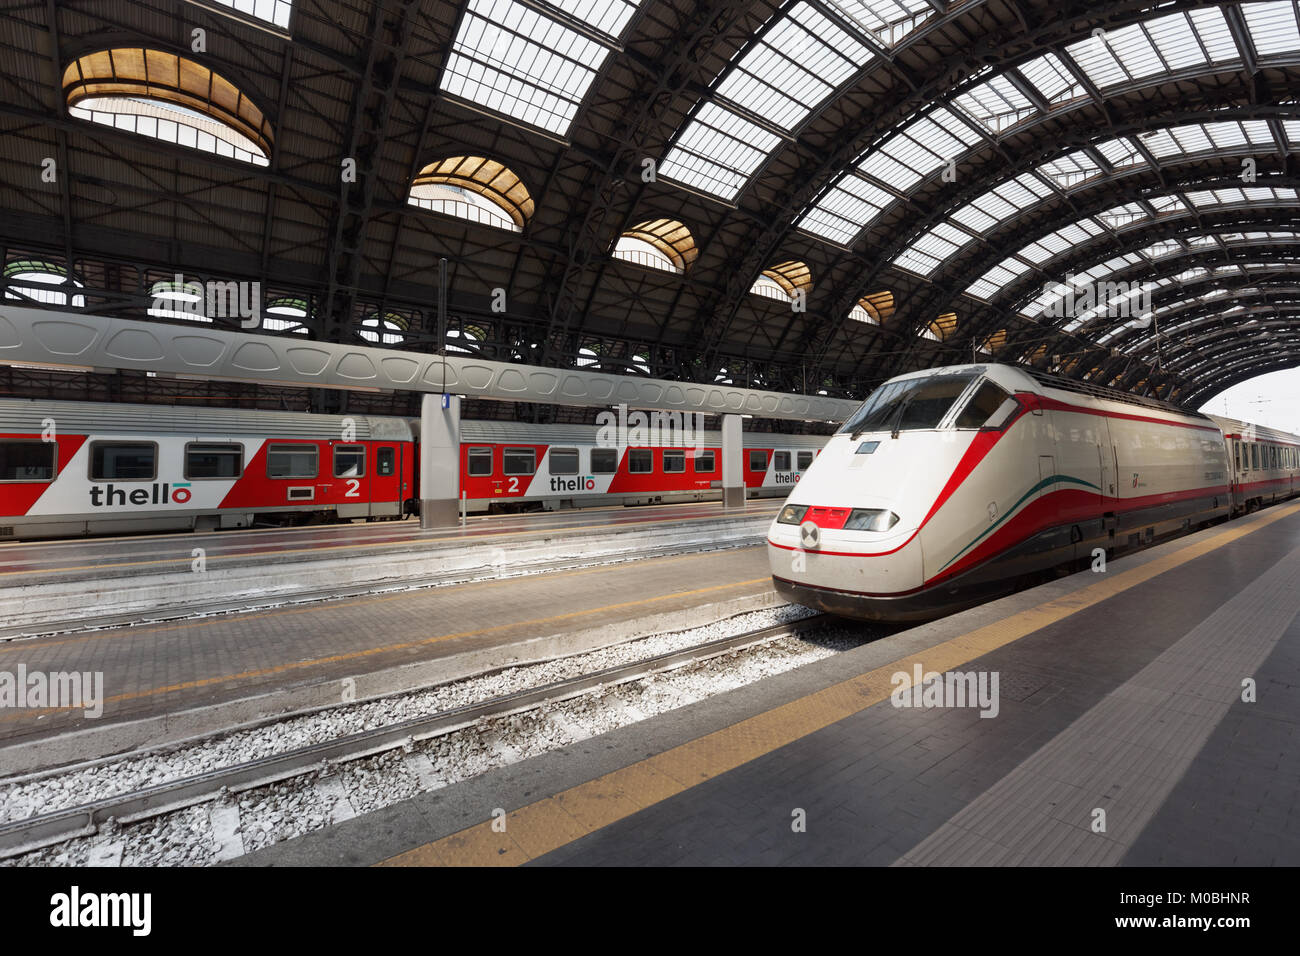 Milan, Italie - 12 juin 2017 : Frecciabianca train arrive à la gare centrale. Frecciabianca les trains fonctionnent à des vitesses allant jusqu'à 250 km/h Banque D'Images